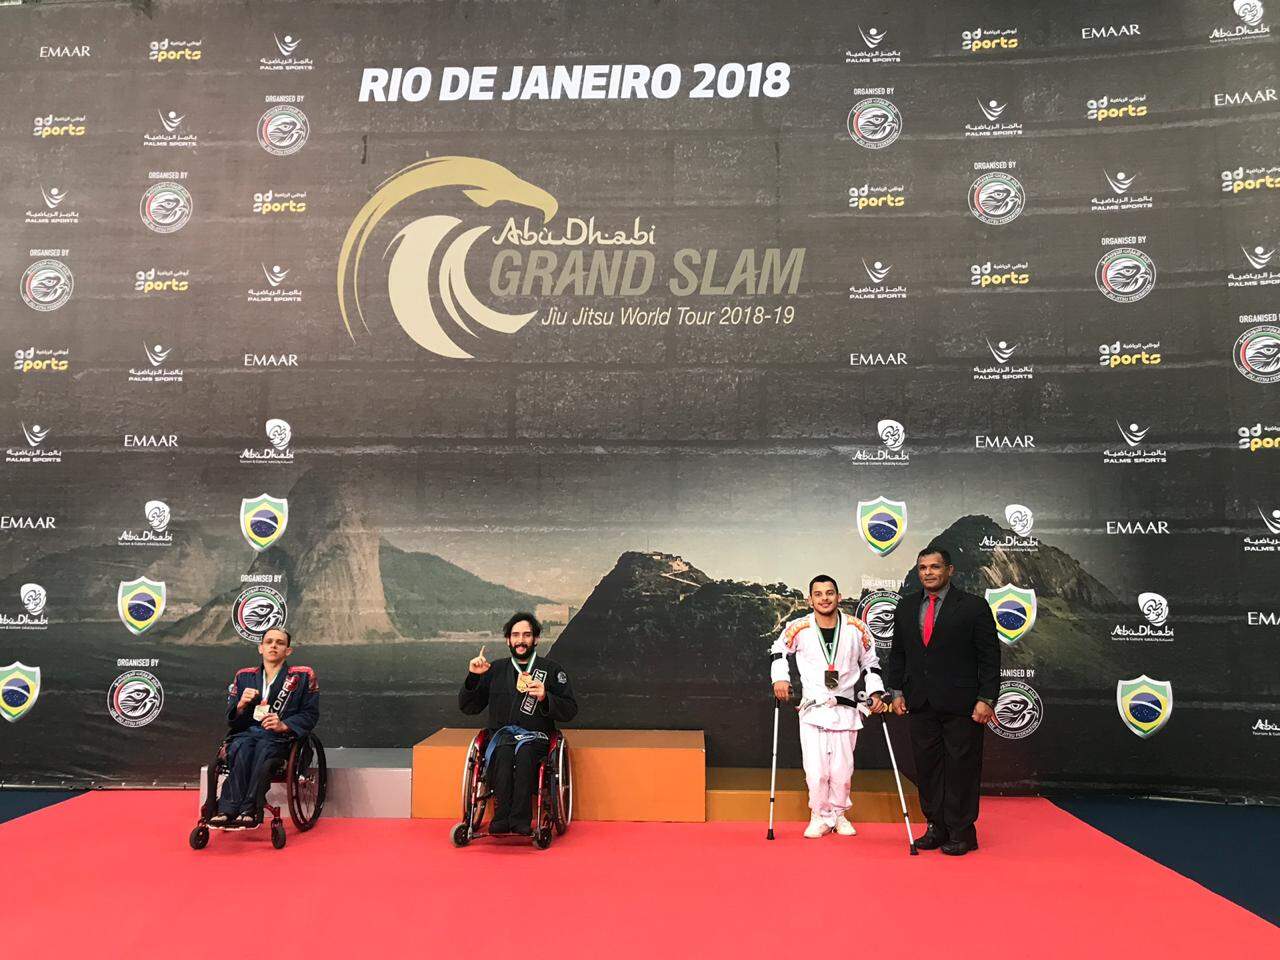 Vinicius (centro) com a medalha de campeão da edição do Grand Slam do Rio de Janeiro